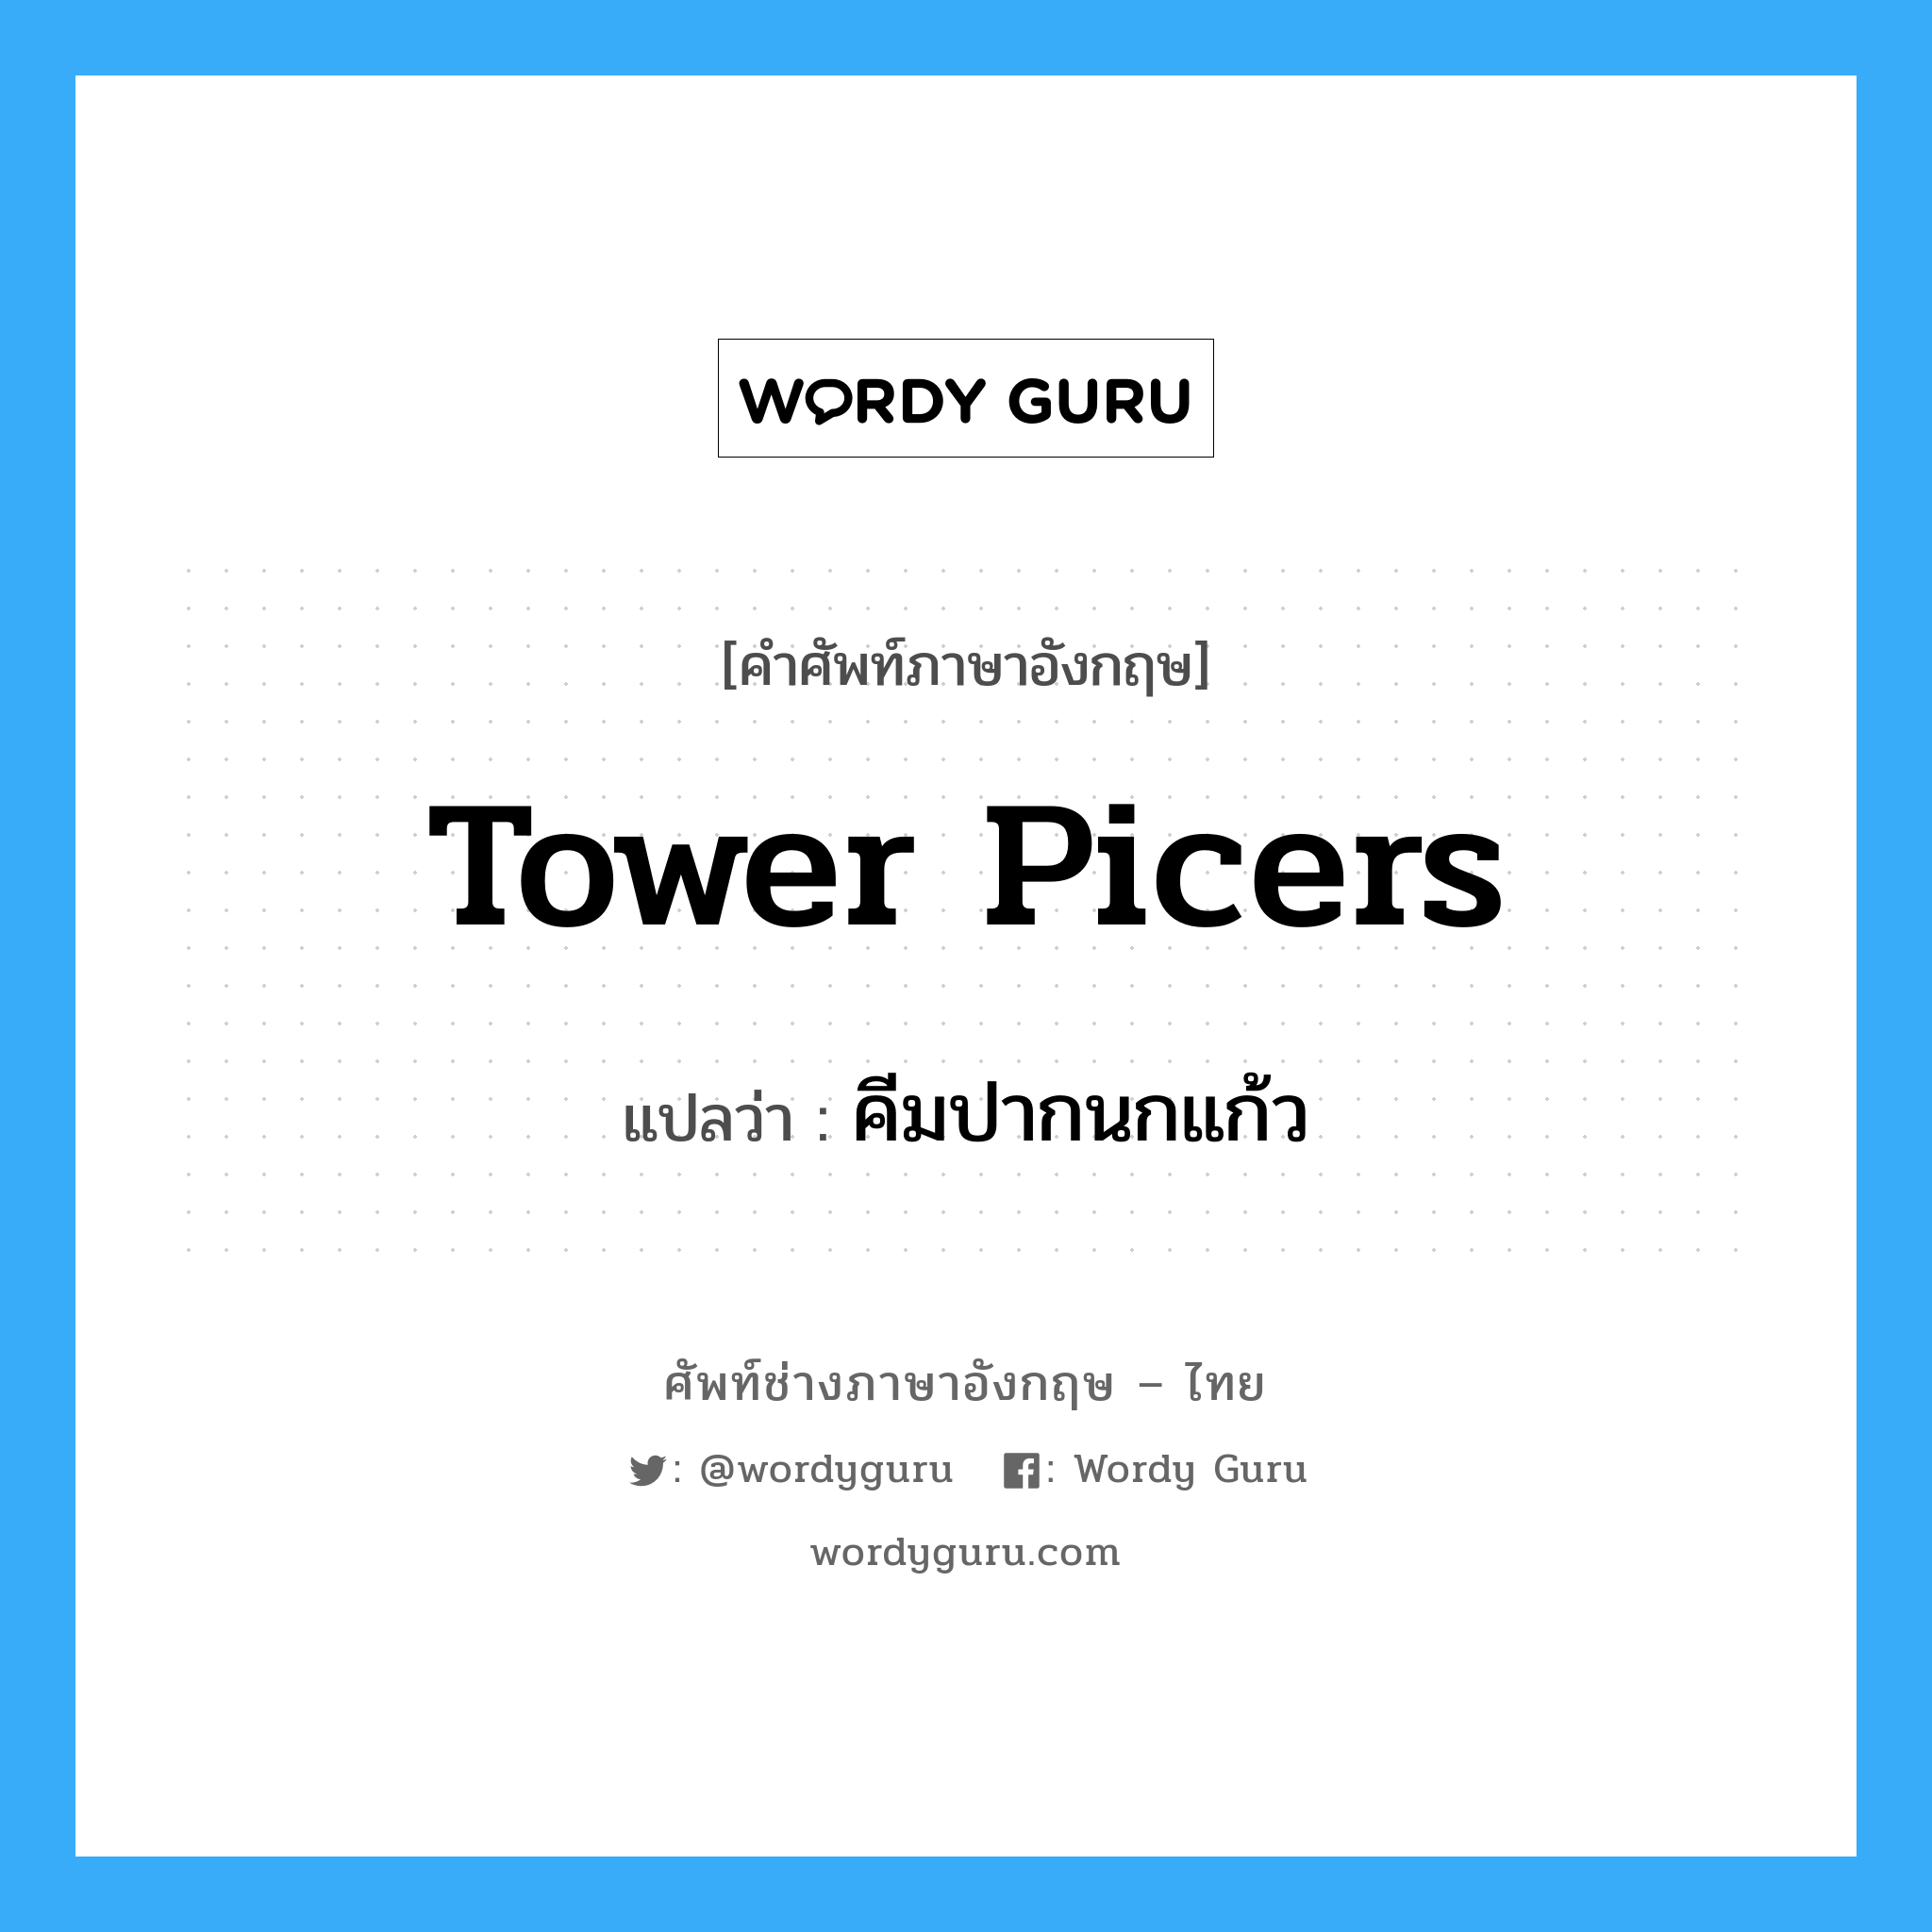 tower picers แปลว่า?, คำศัพท์ช่างภาษาอังกฤษ - ไทย tower picers คำศัพท์ภาษาอังกฤษ tower picers แปลว่า คีมปากนกแก้ว